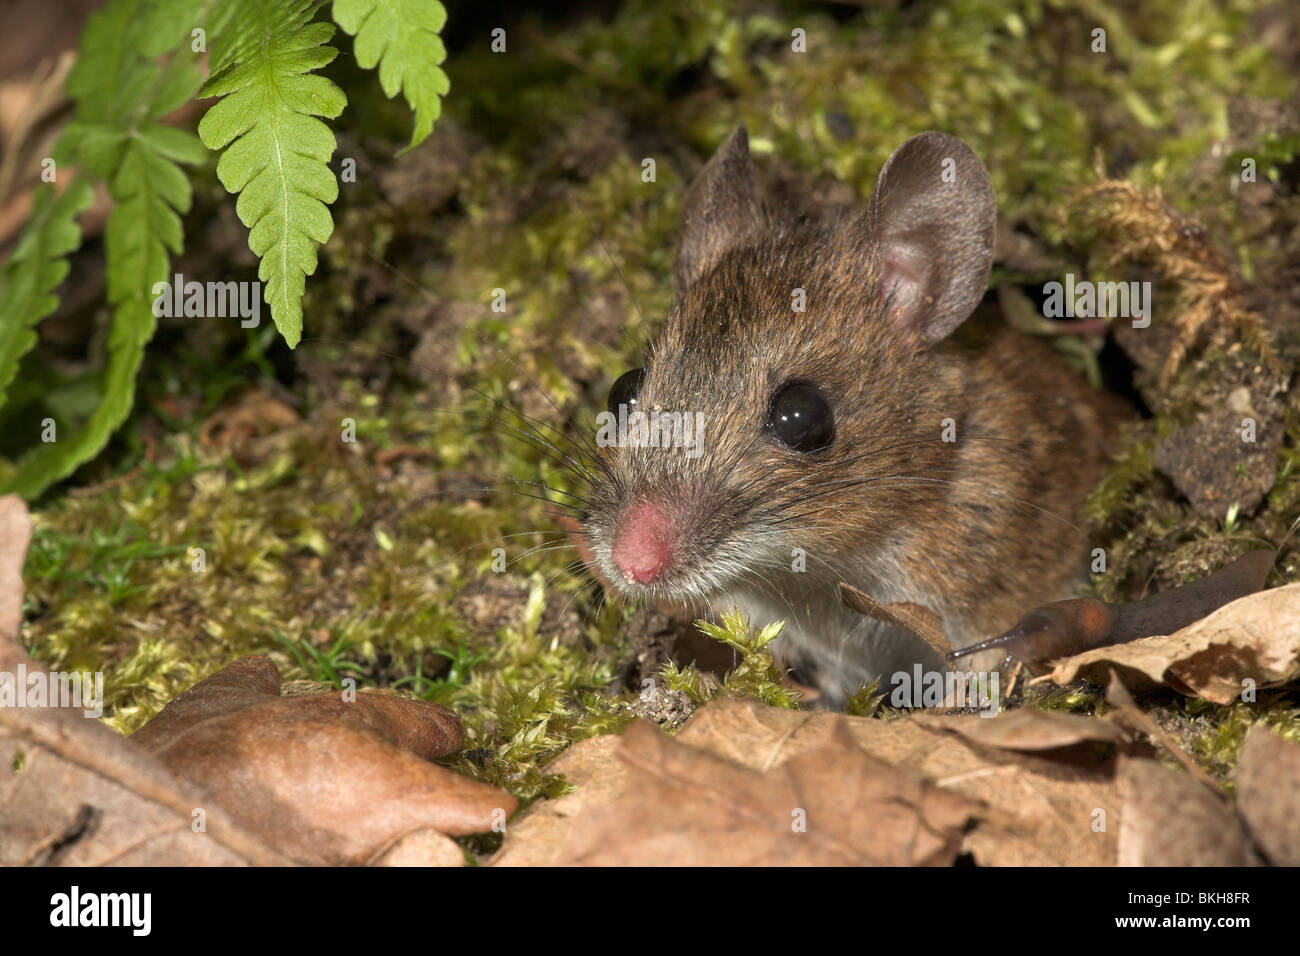 Foto van een bosmuis die 'S nachts uit zijn komt kruipen holletje ; photo d'un bois venant de la souris hors de son terrier (trou) dans la nuit Banque D'Images